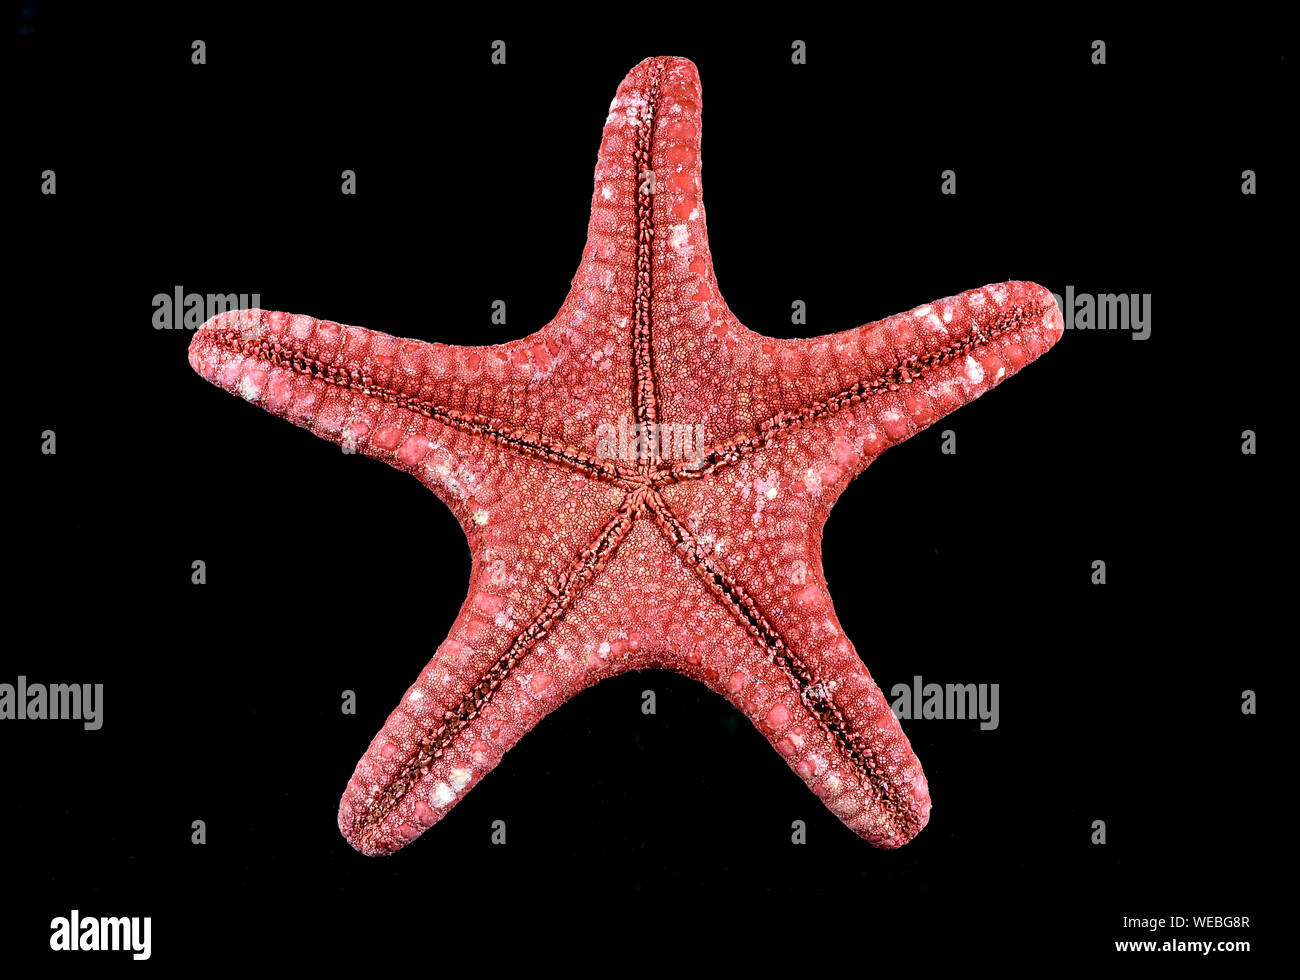 Cerca de la parte ventral de una estrella de mar rojo , especies marinas , aislado sobre fondo negro, mostrando detalles del tejido Foto de stock